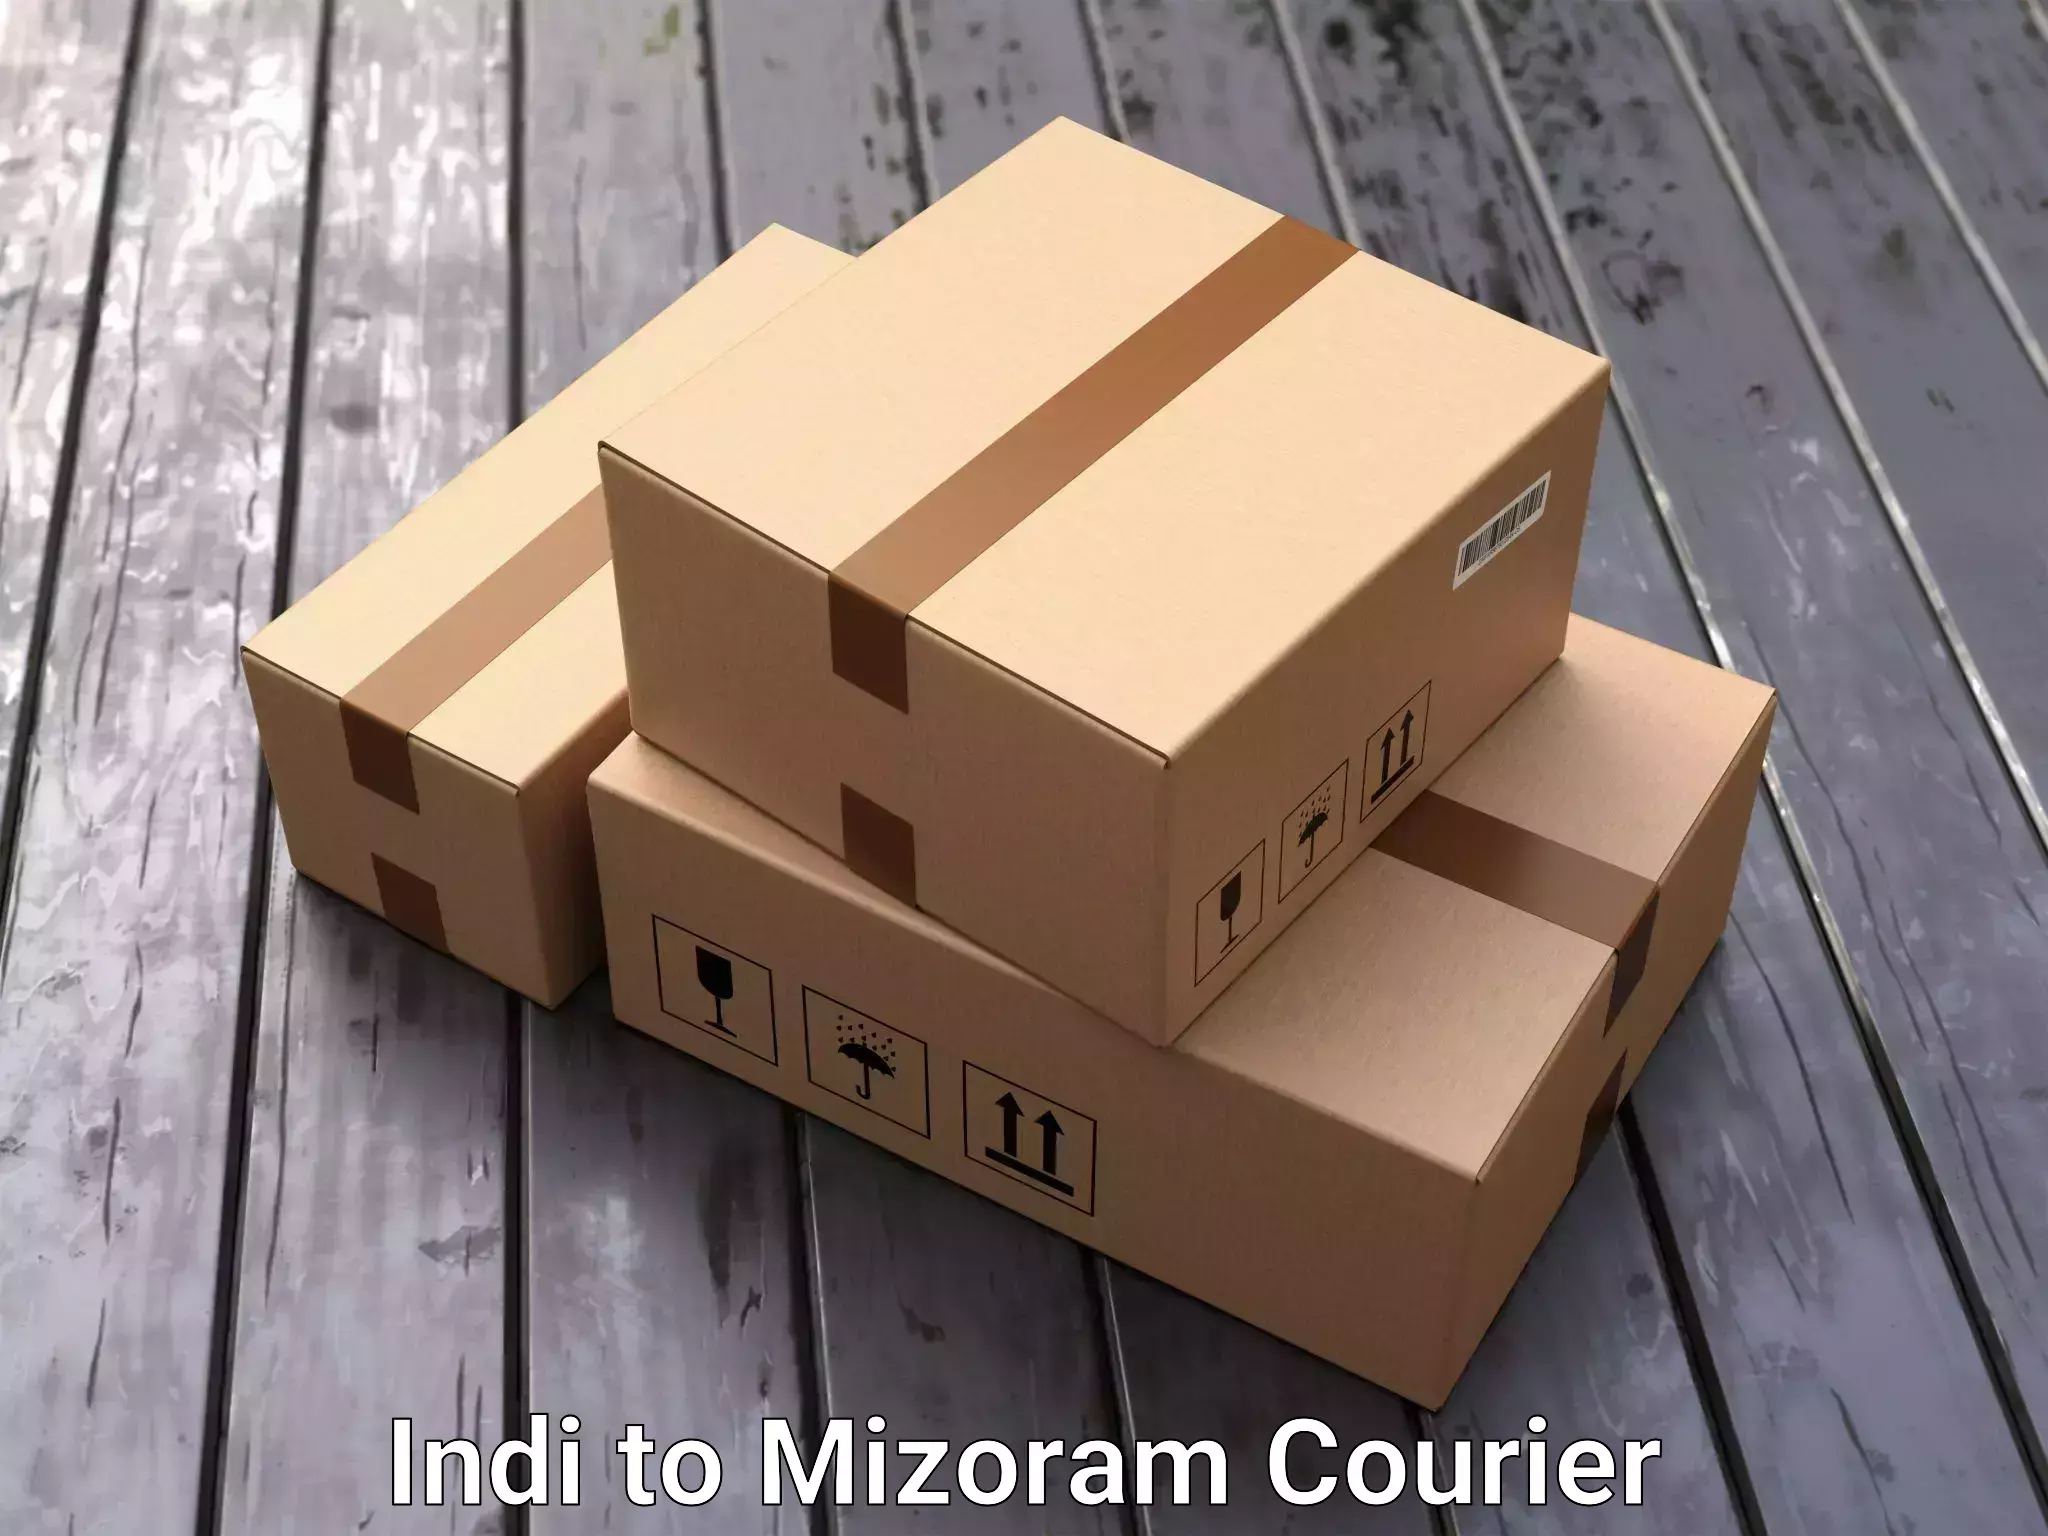 Furniture moving experts Indi to Mizoram